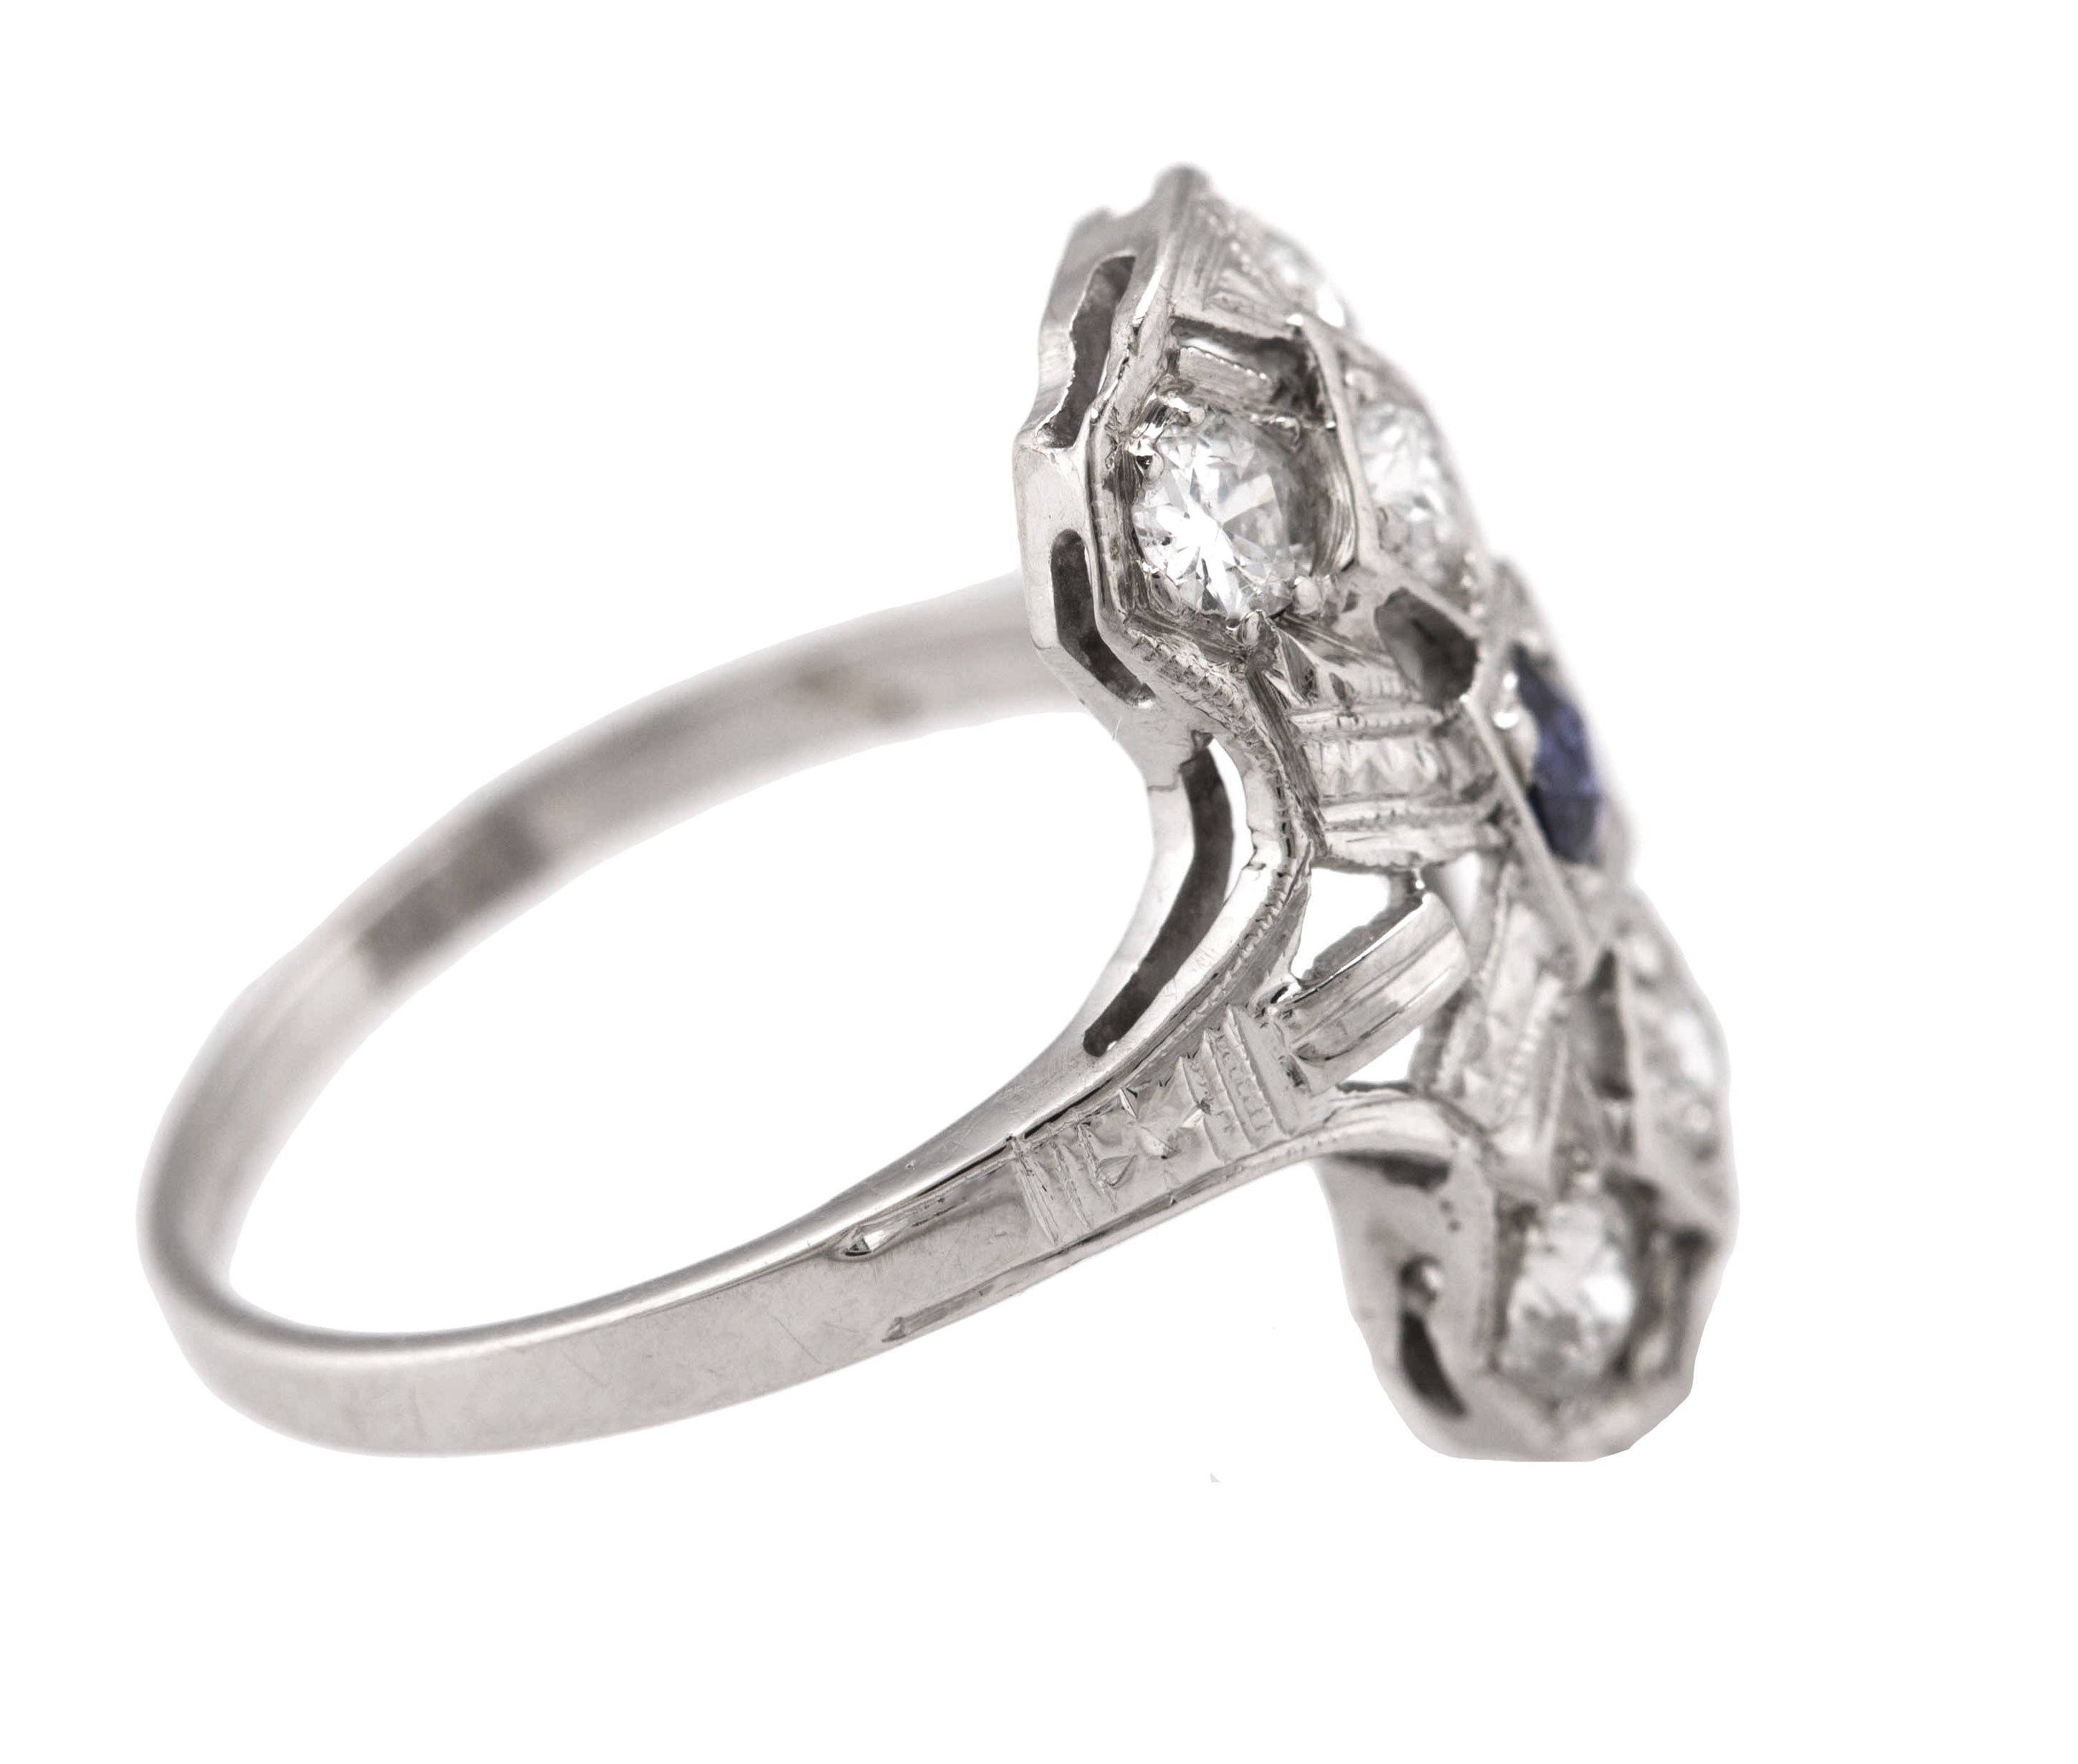 Art Deco 14K White Gold 0.66ctw Diamond Blue Sapphire Filigree Dinner Ring